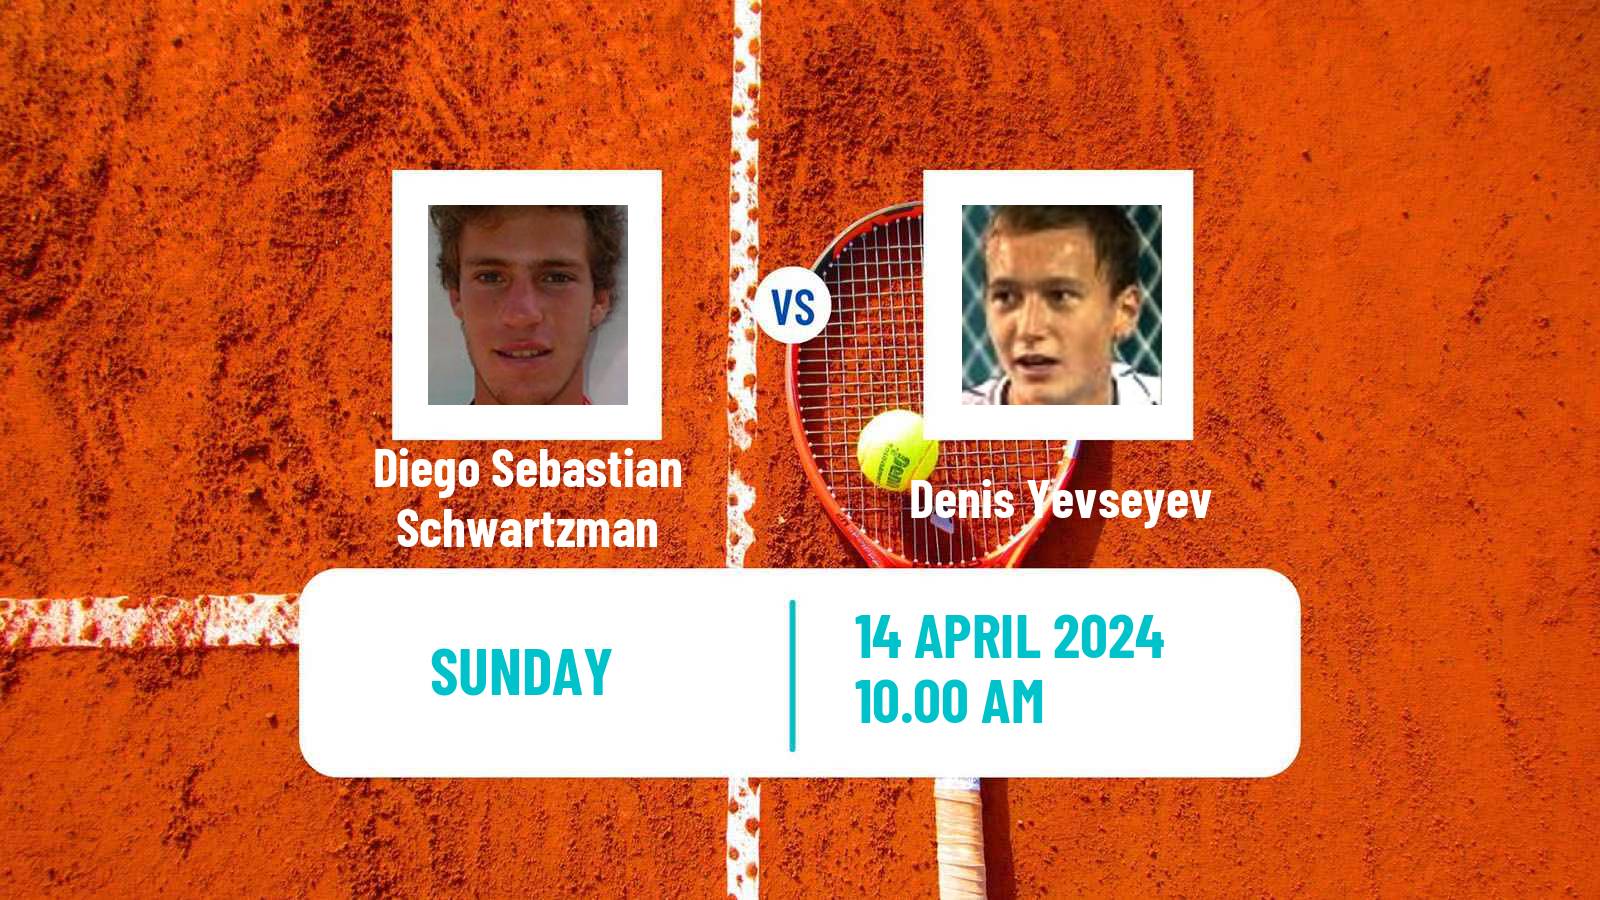 Tennis ATP Barcelona Diego Sebastian Schwartzman - Denis Yevseyev